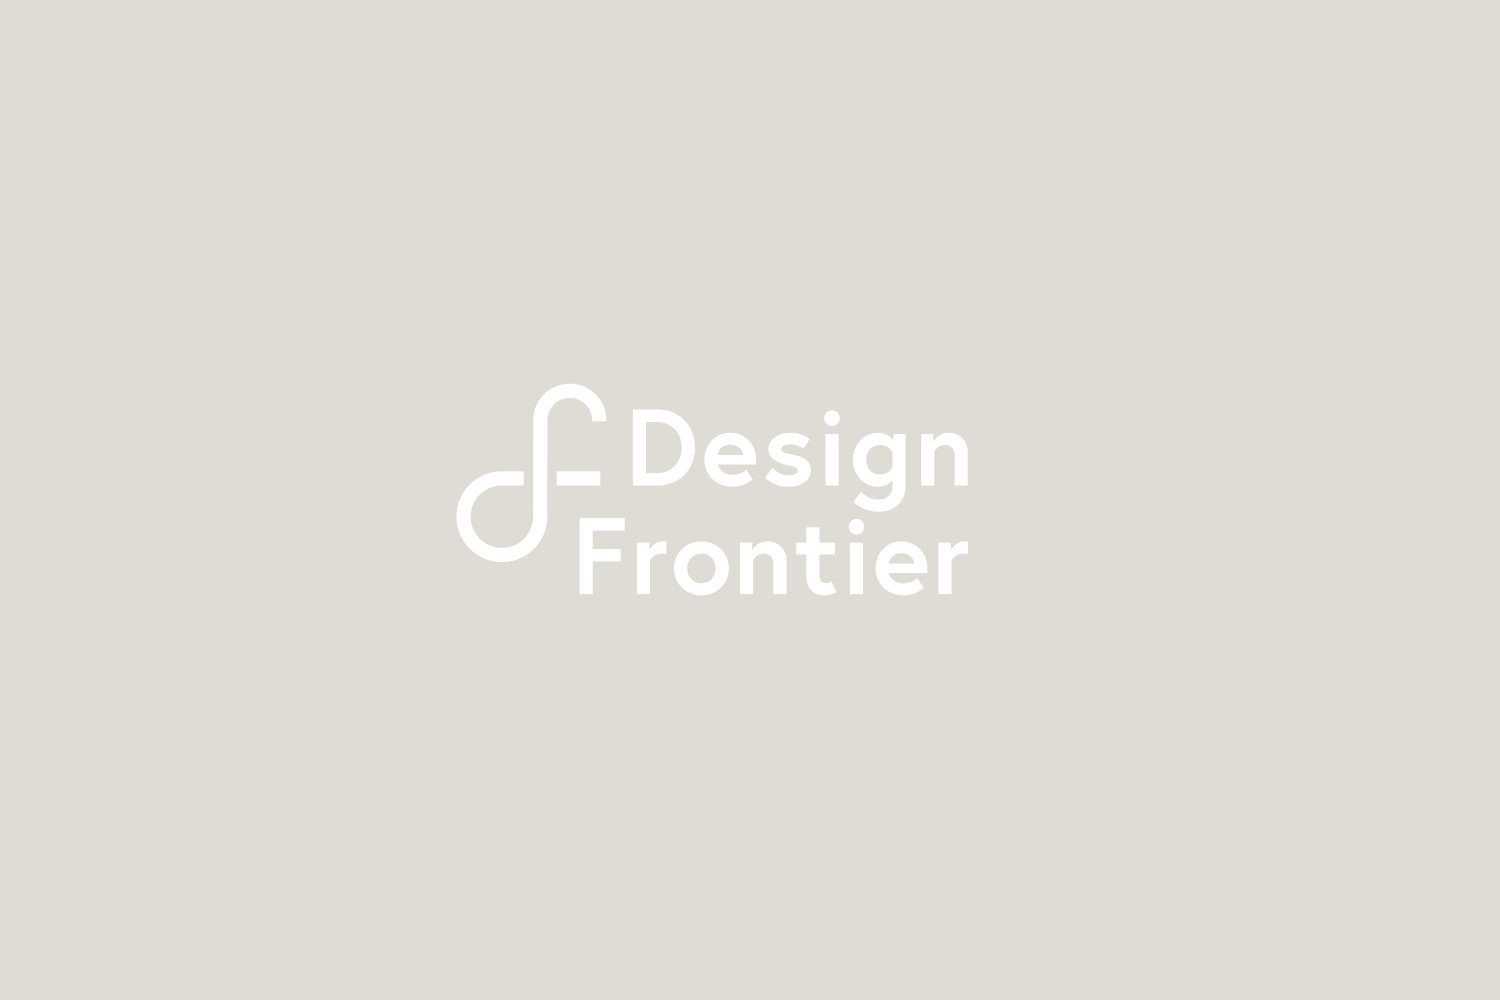 06.Becca_Allen_Design_Frontier_Logo.jpg